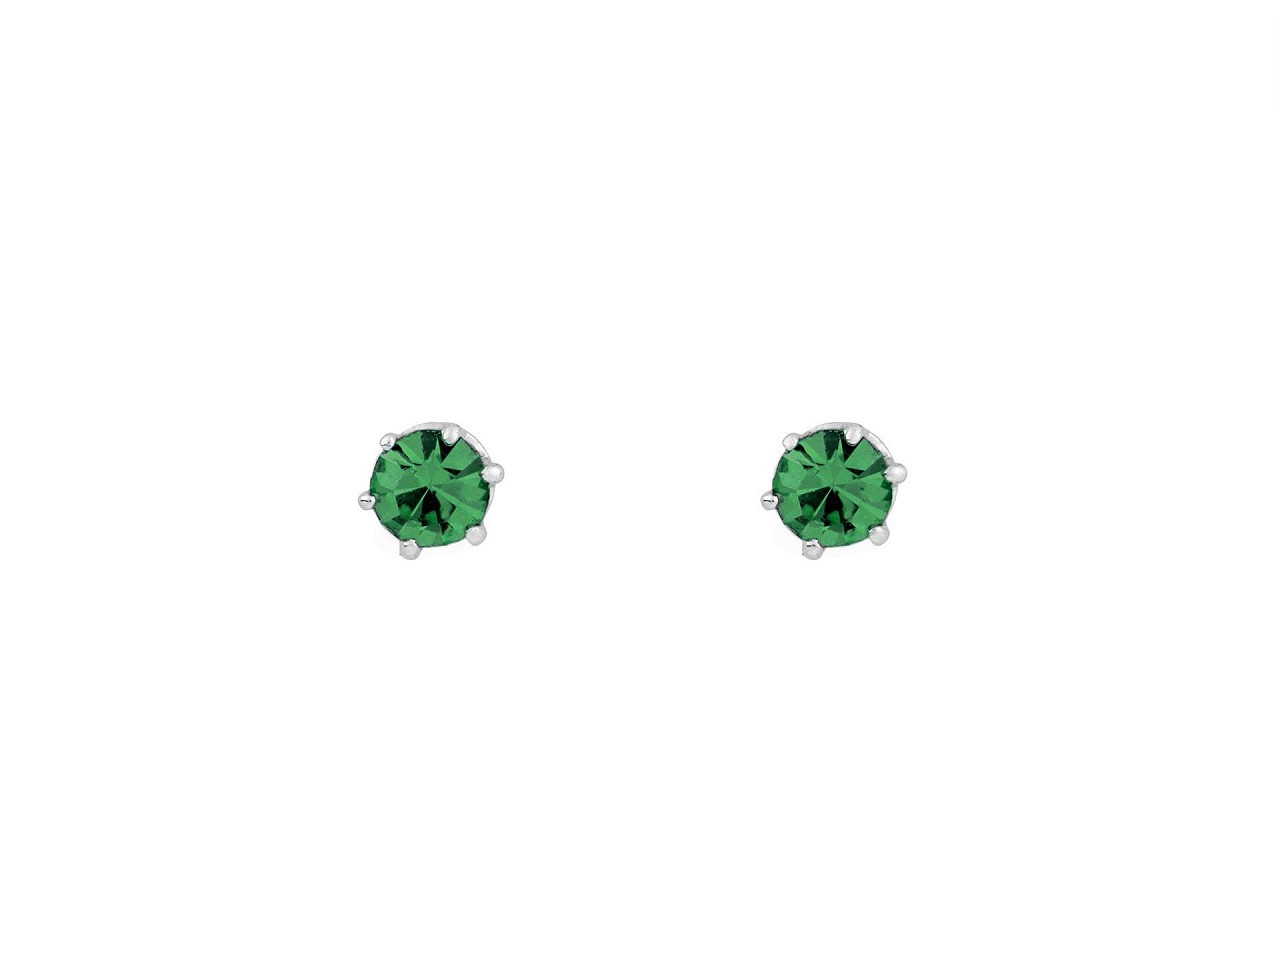 Náušnice jablonecká bižuterie, barva 4 emerald